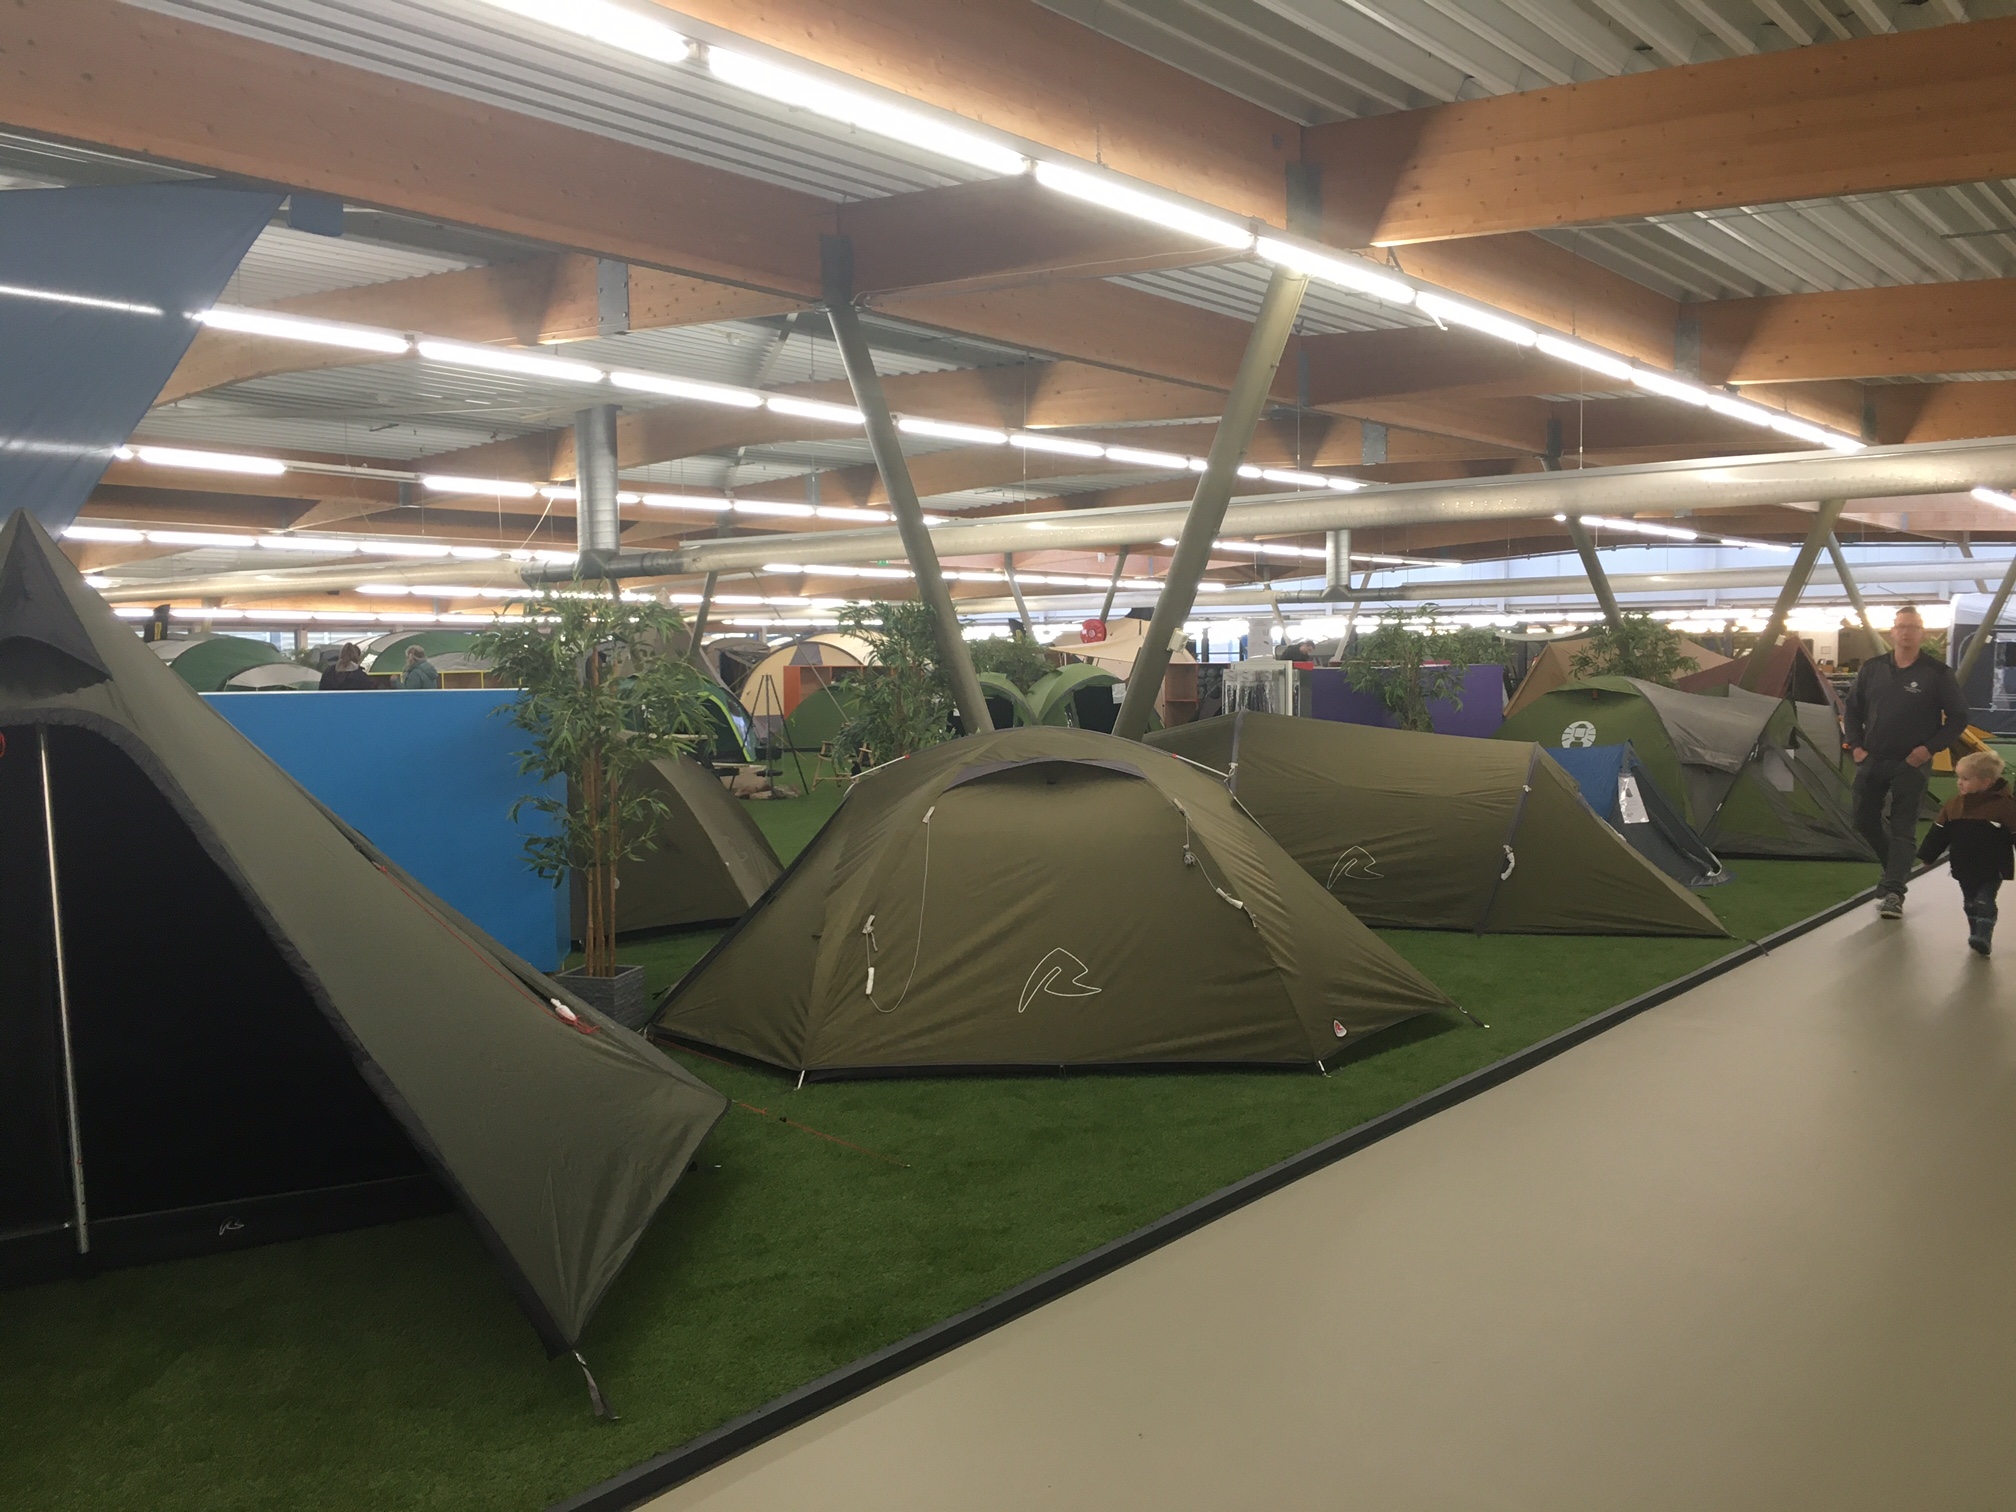 Tent kopen: uit wat voor tenten kun je kiezen?